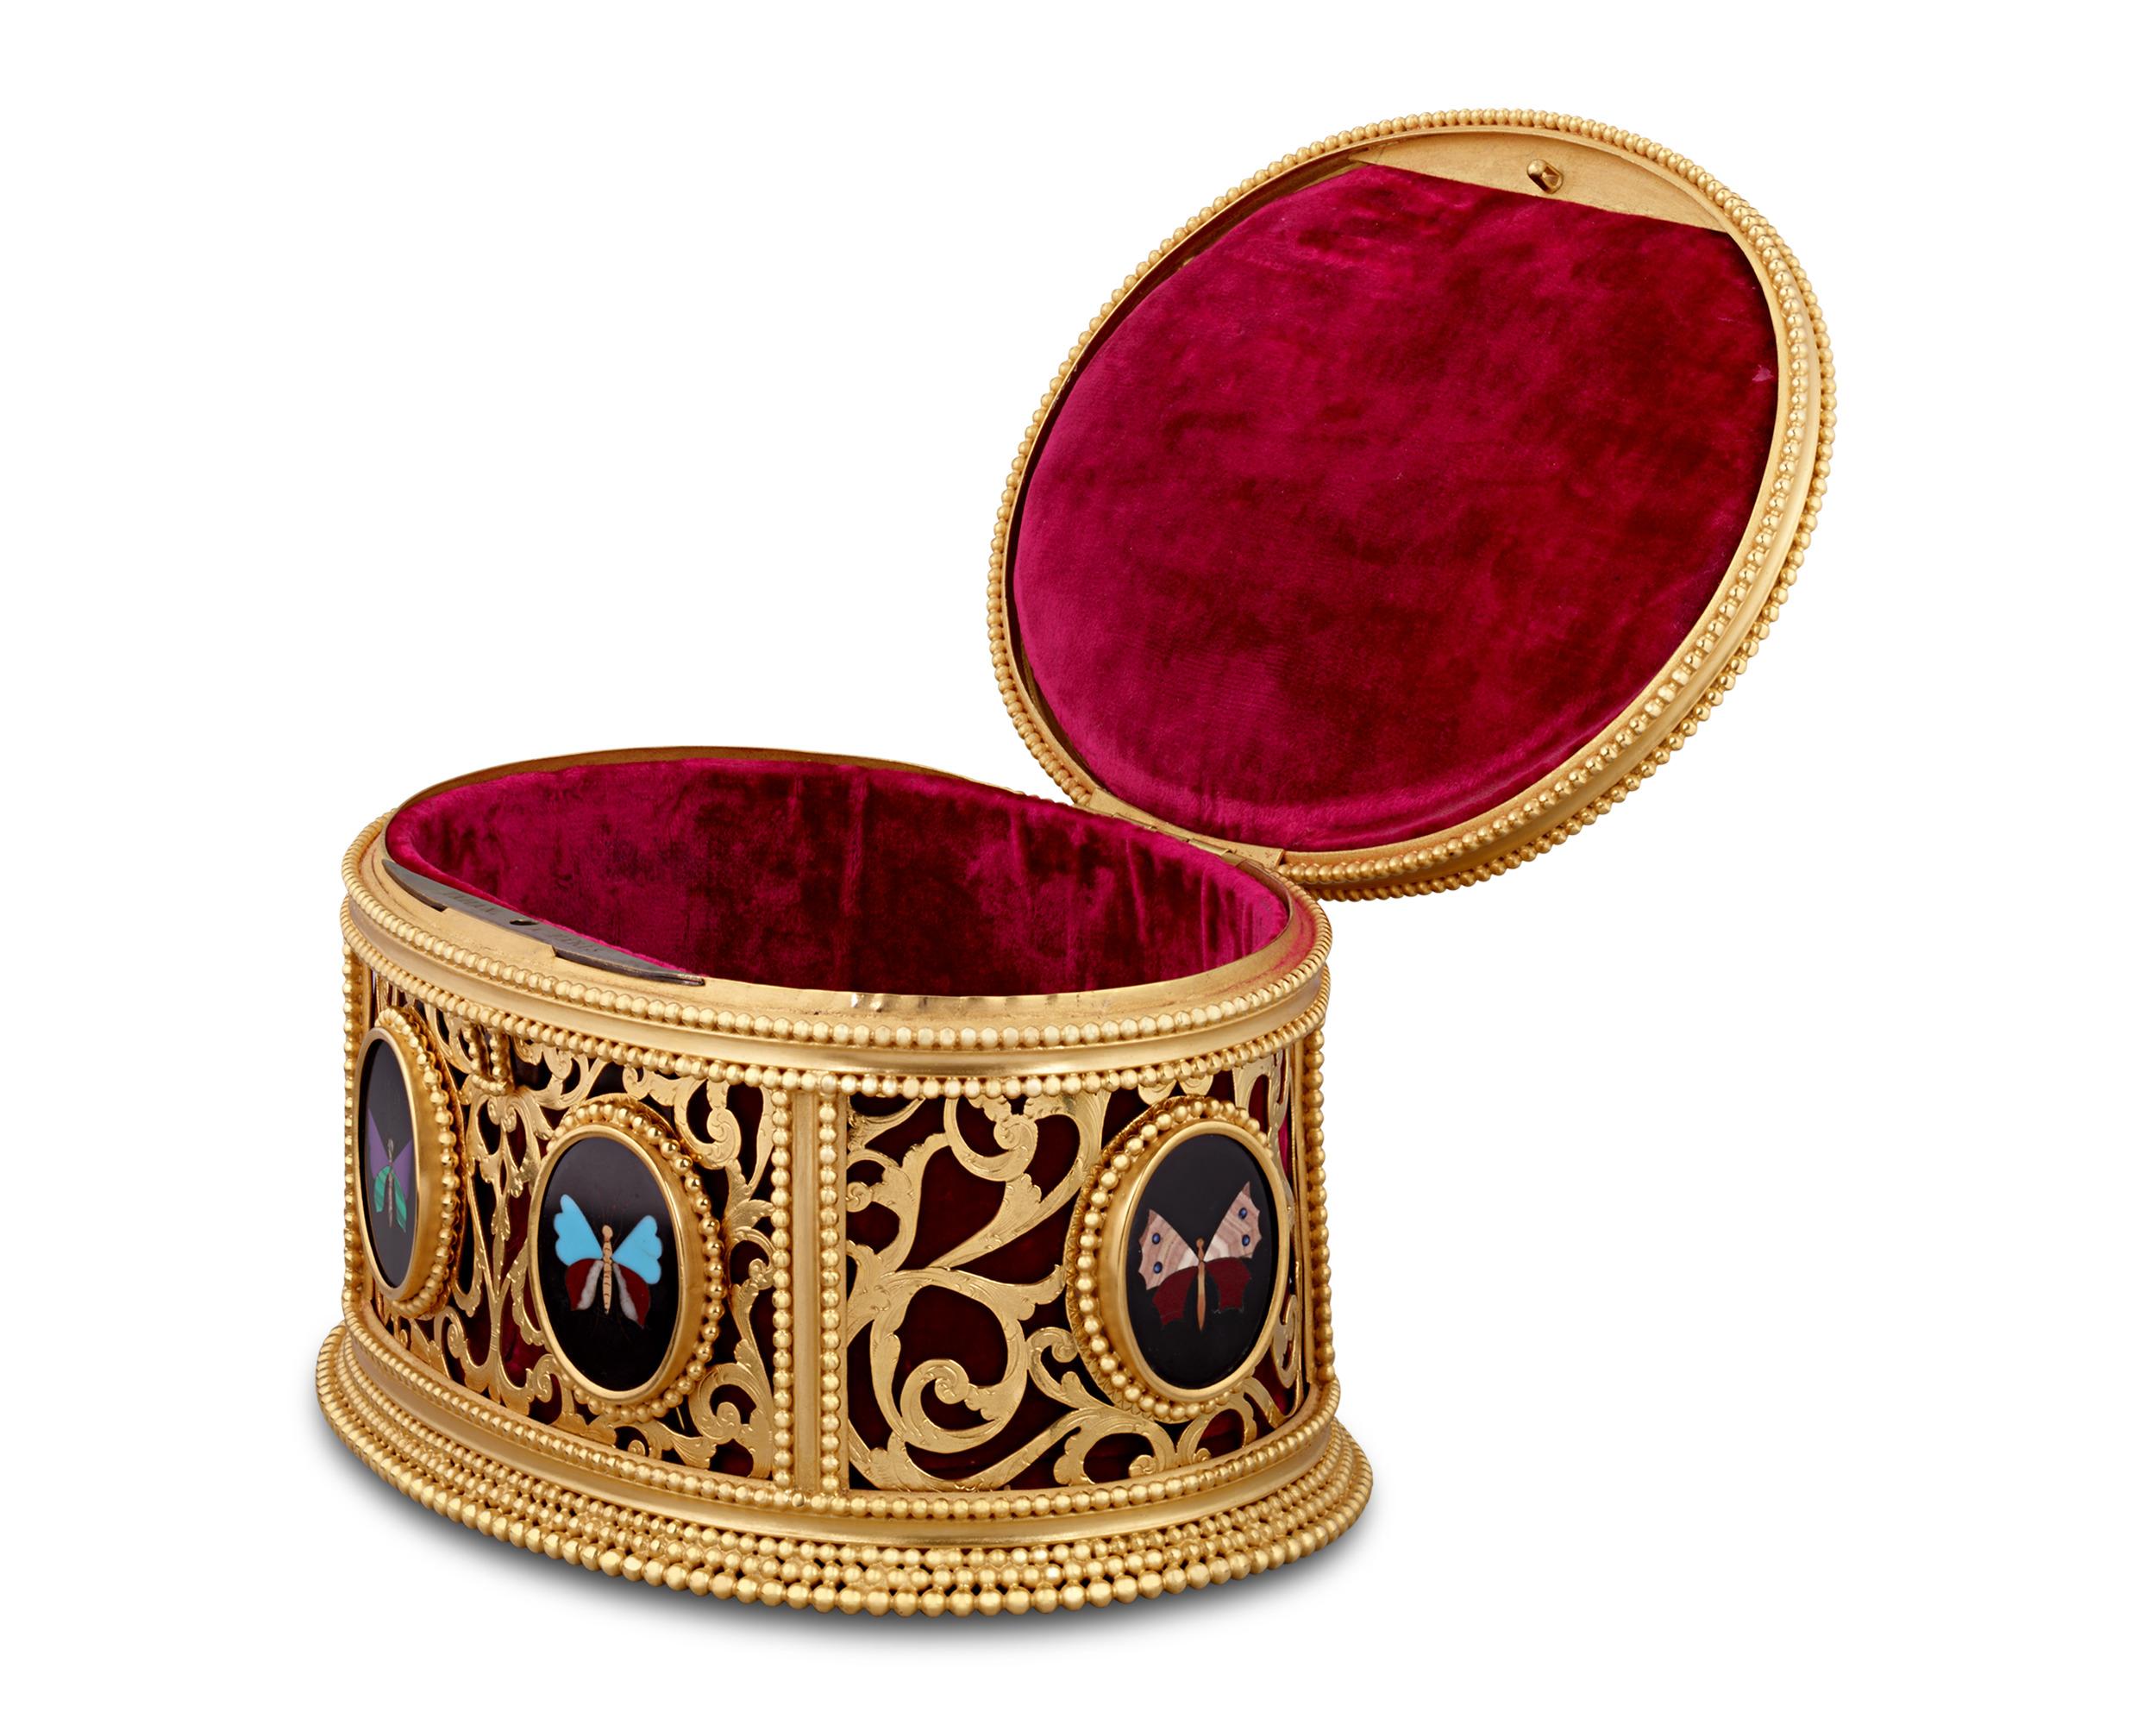 Fabriquée par Jean-Pierre-Alexandre Tahan, l'estimé ébéniste de Napoléon III, cette boîte à bijoux est un exemple remarquable de l'art européen du XIXe siècle. La boîte, façonnée en bronze doré, présente un motif Rocaille caractérisé par des courbes